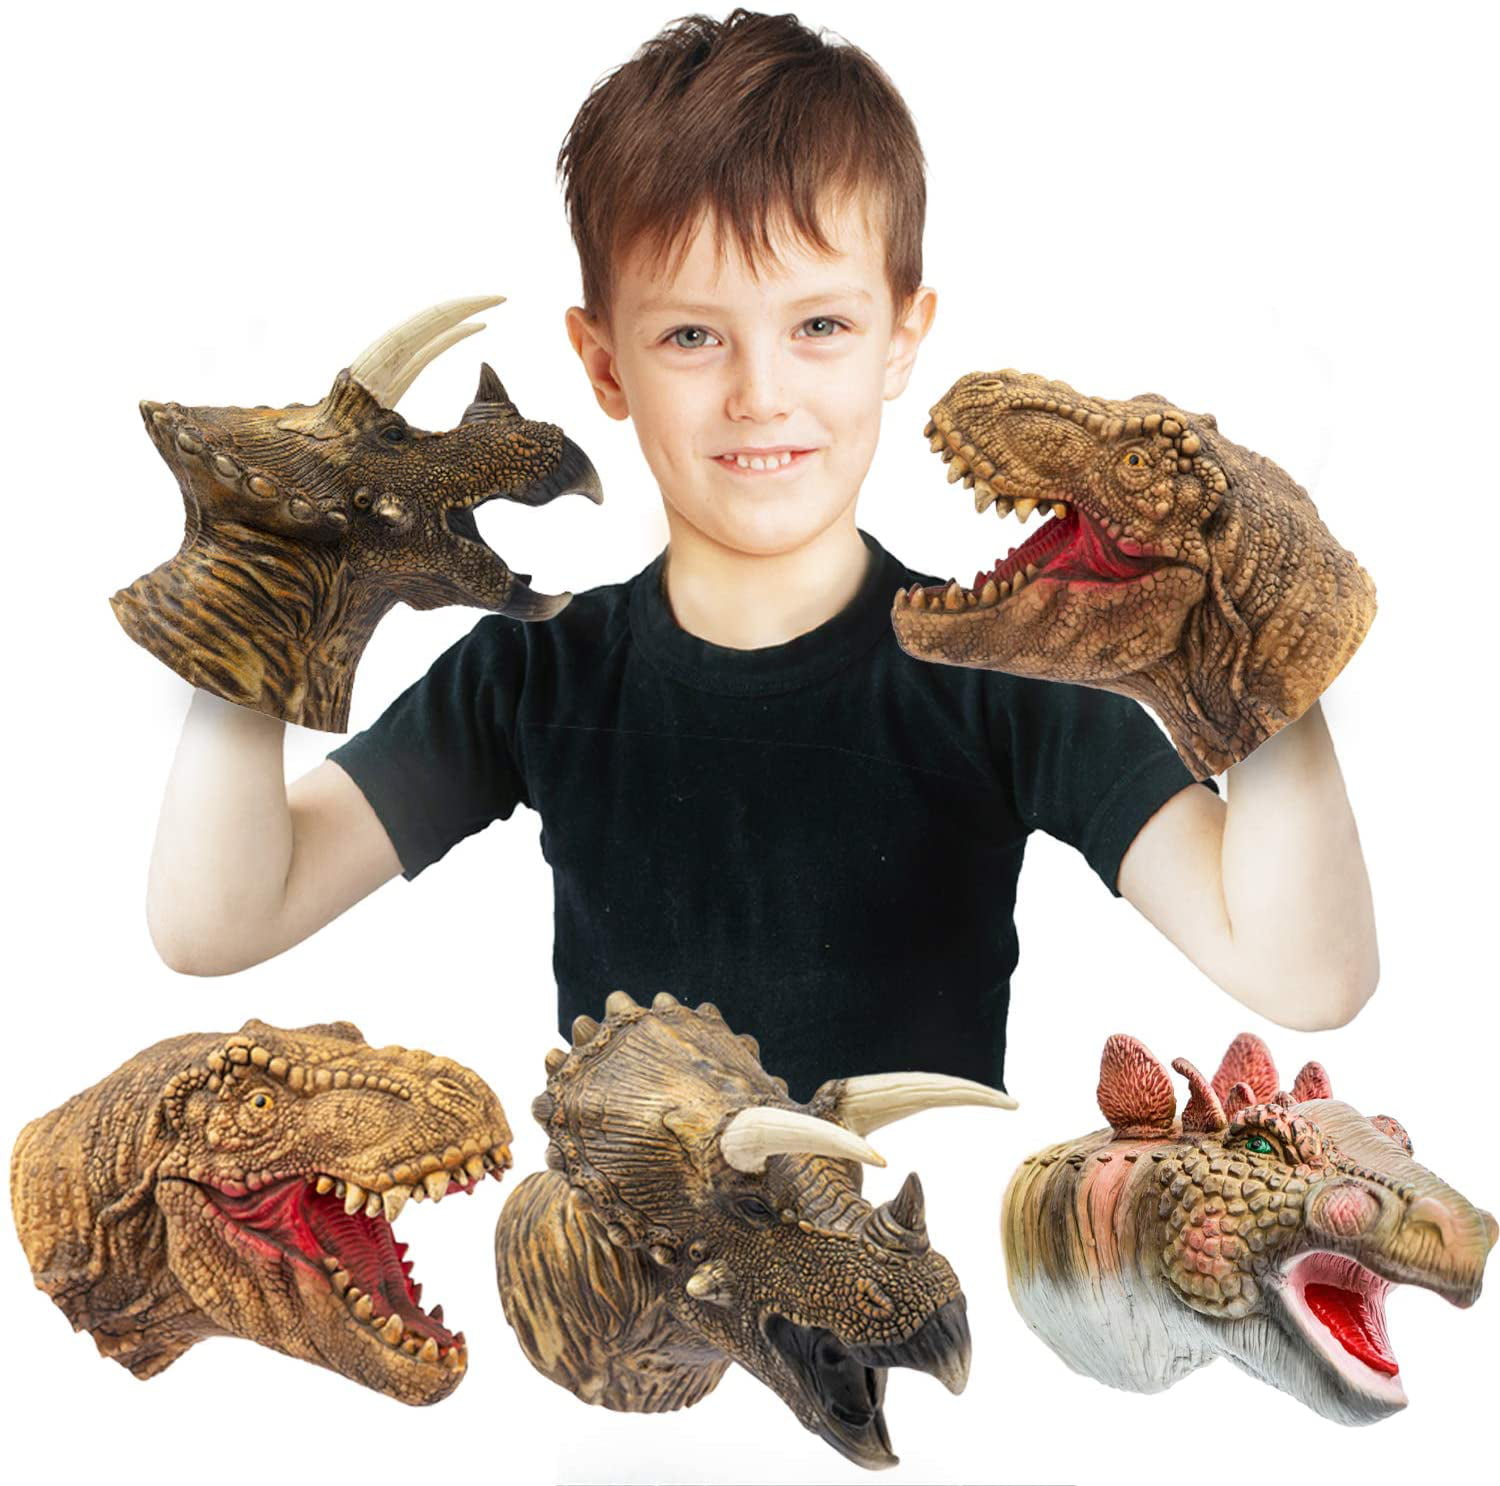 Dinosaur Hand Puppet Velociraptor Model Figure Children Toy Gift for Kids 